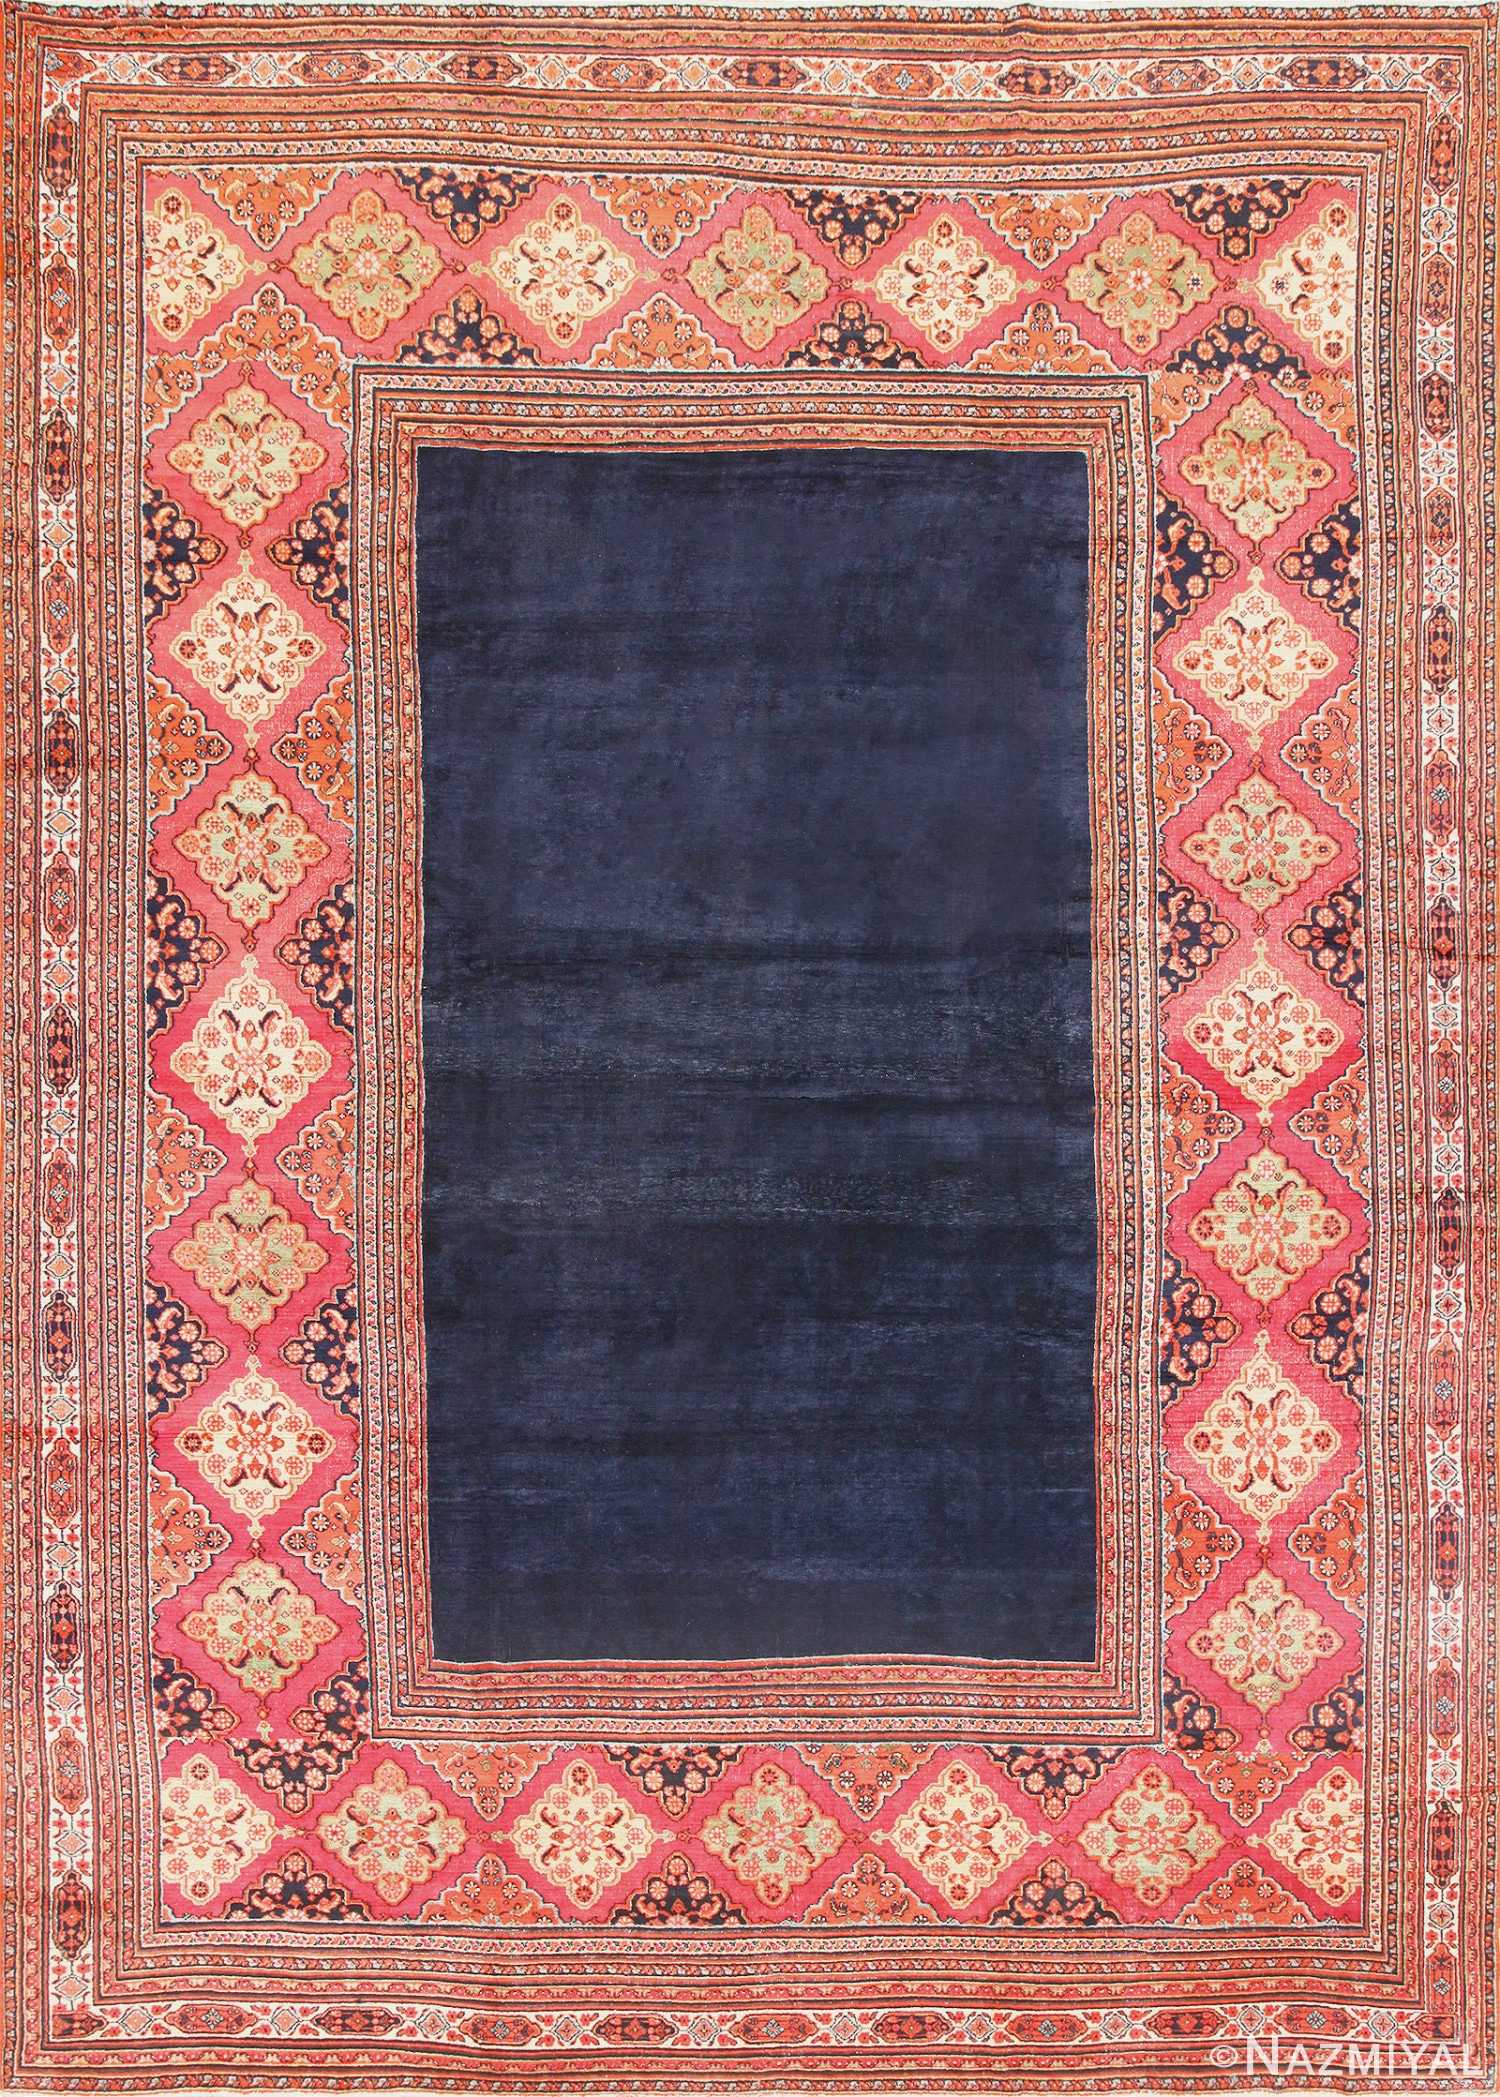 Large Antique Persian Khorassan Carpet 47363 Nazmiyal